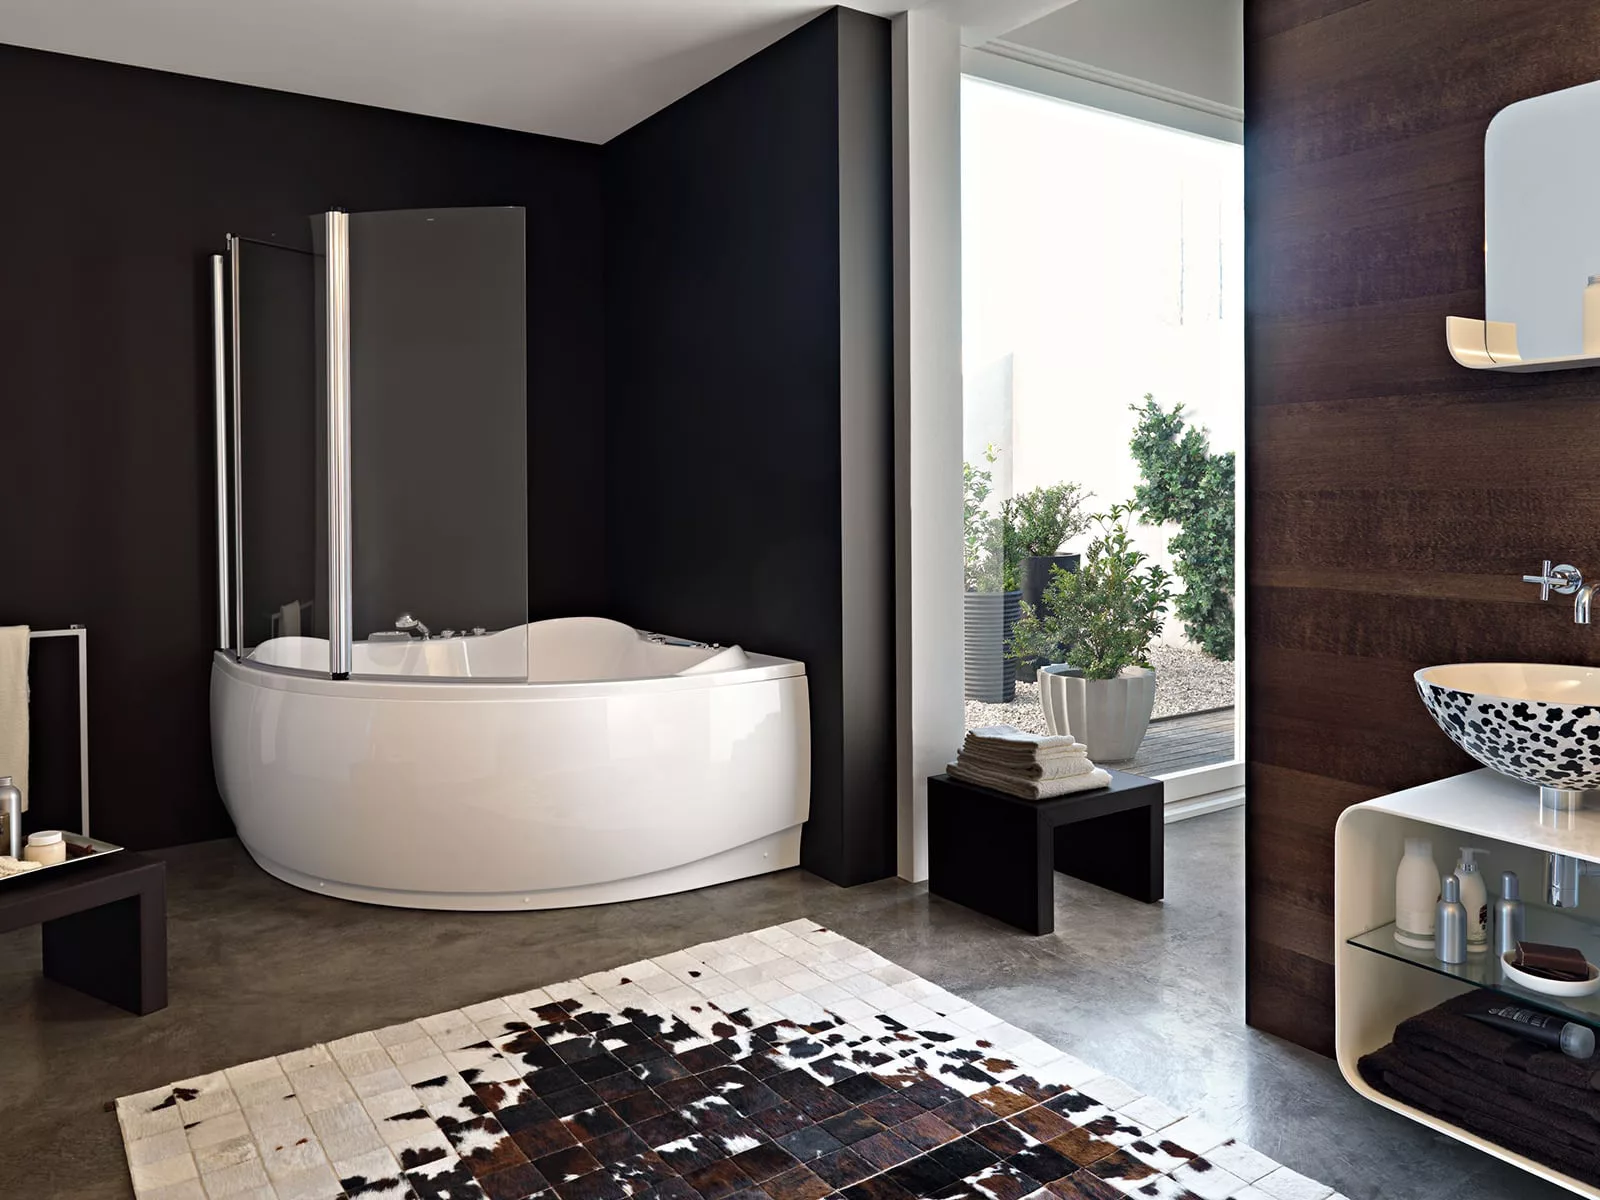 Шторка для ванной (66 фото): прозрачные шторы, необычные занавески для ванной комнаты, как подобрать правильный размер